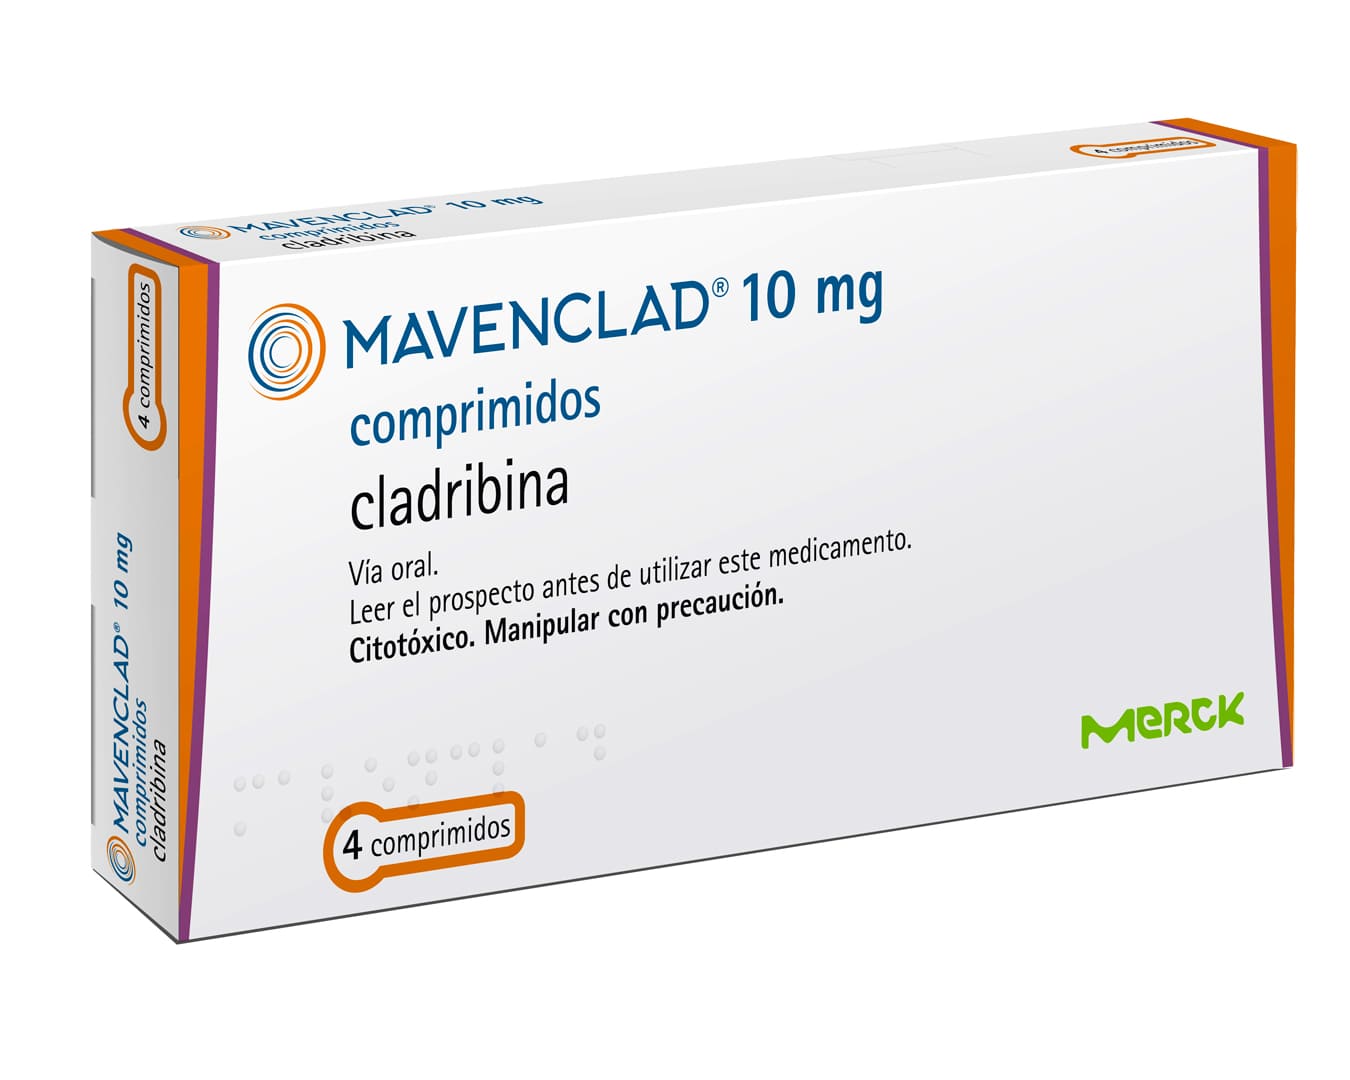 A imagem mostra uma caixa do medicamento MAVENCLAD® 10 mg comprimidos, utilizado no tratamento para esclerose múltipla incorporado ao SUS.